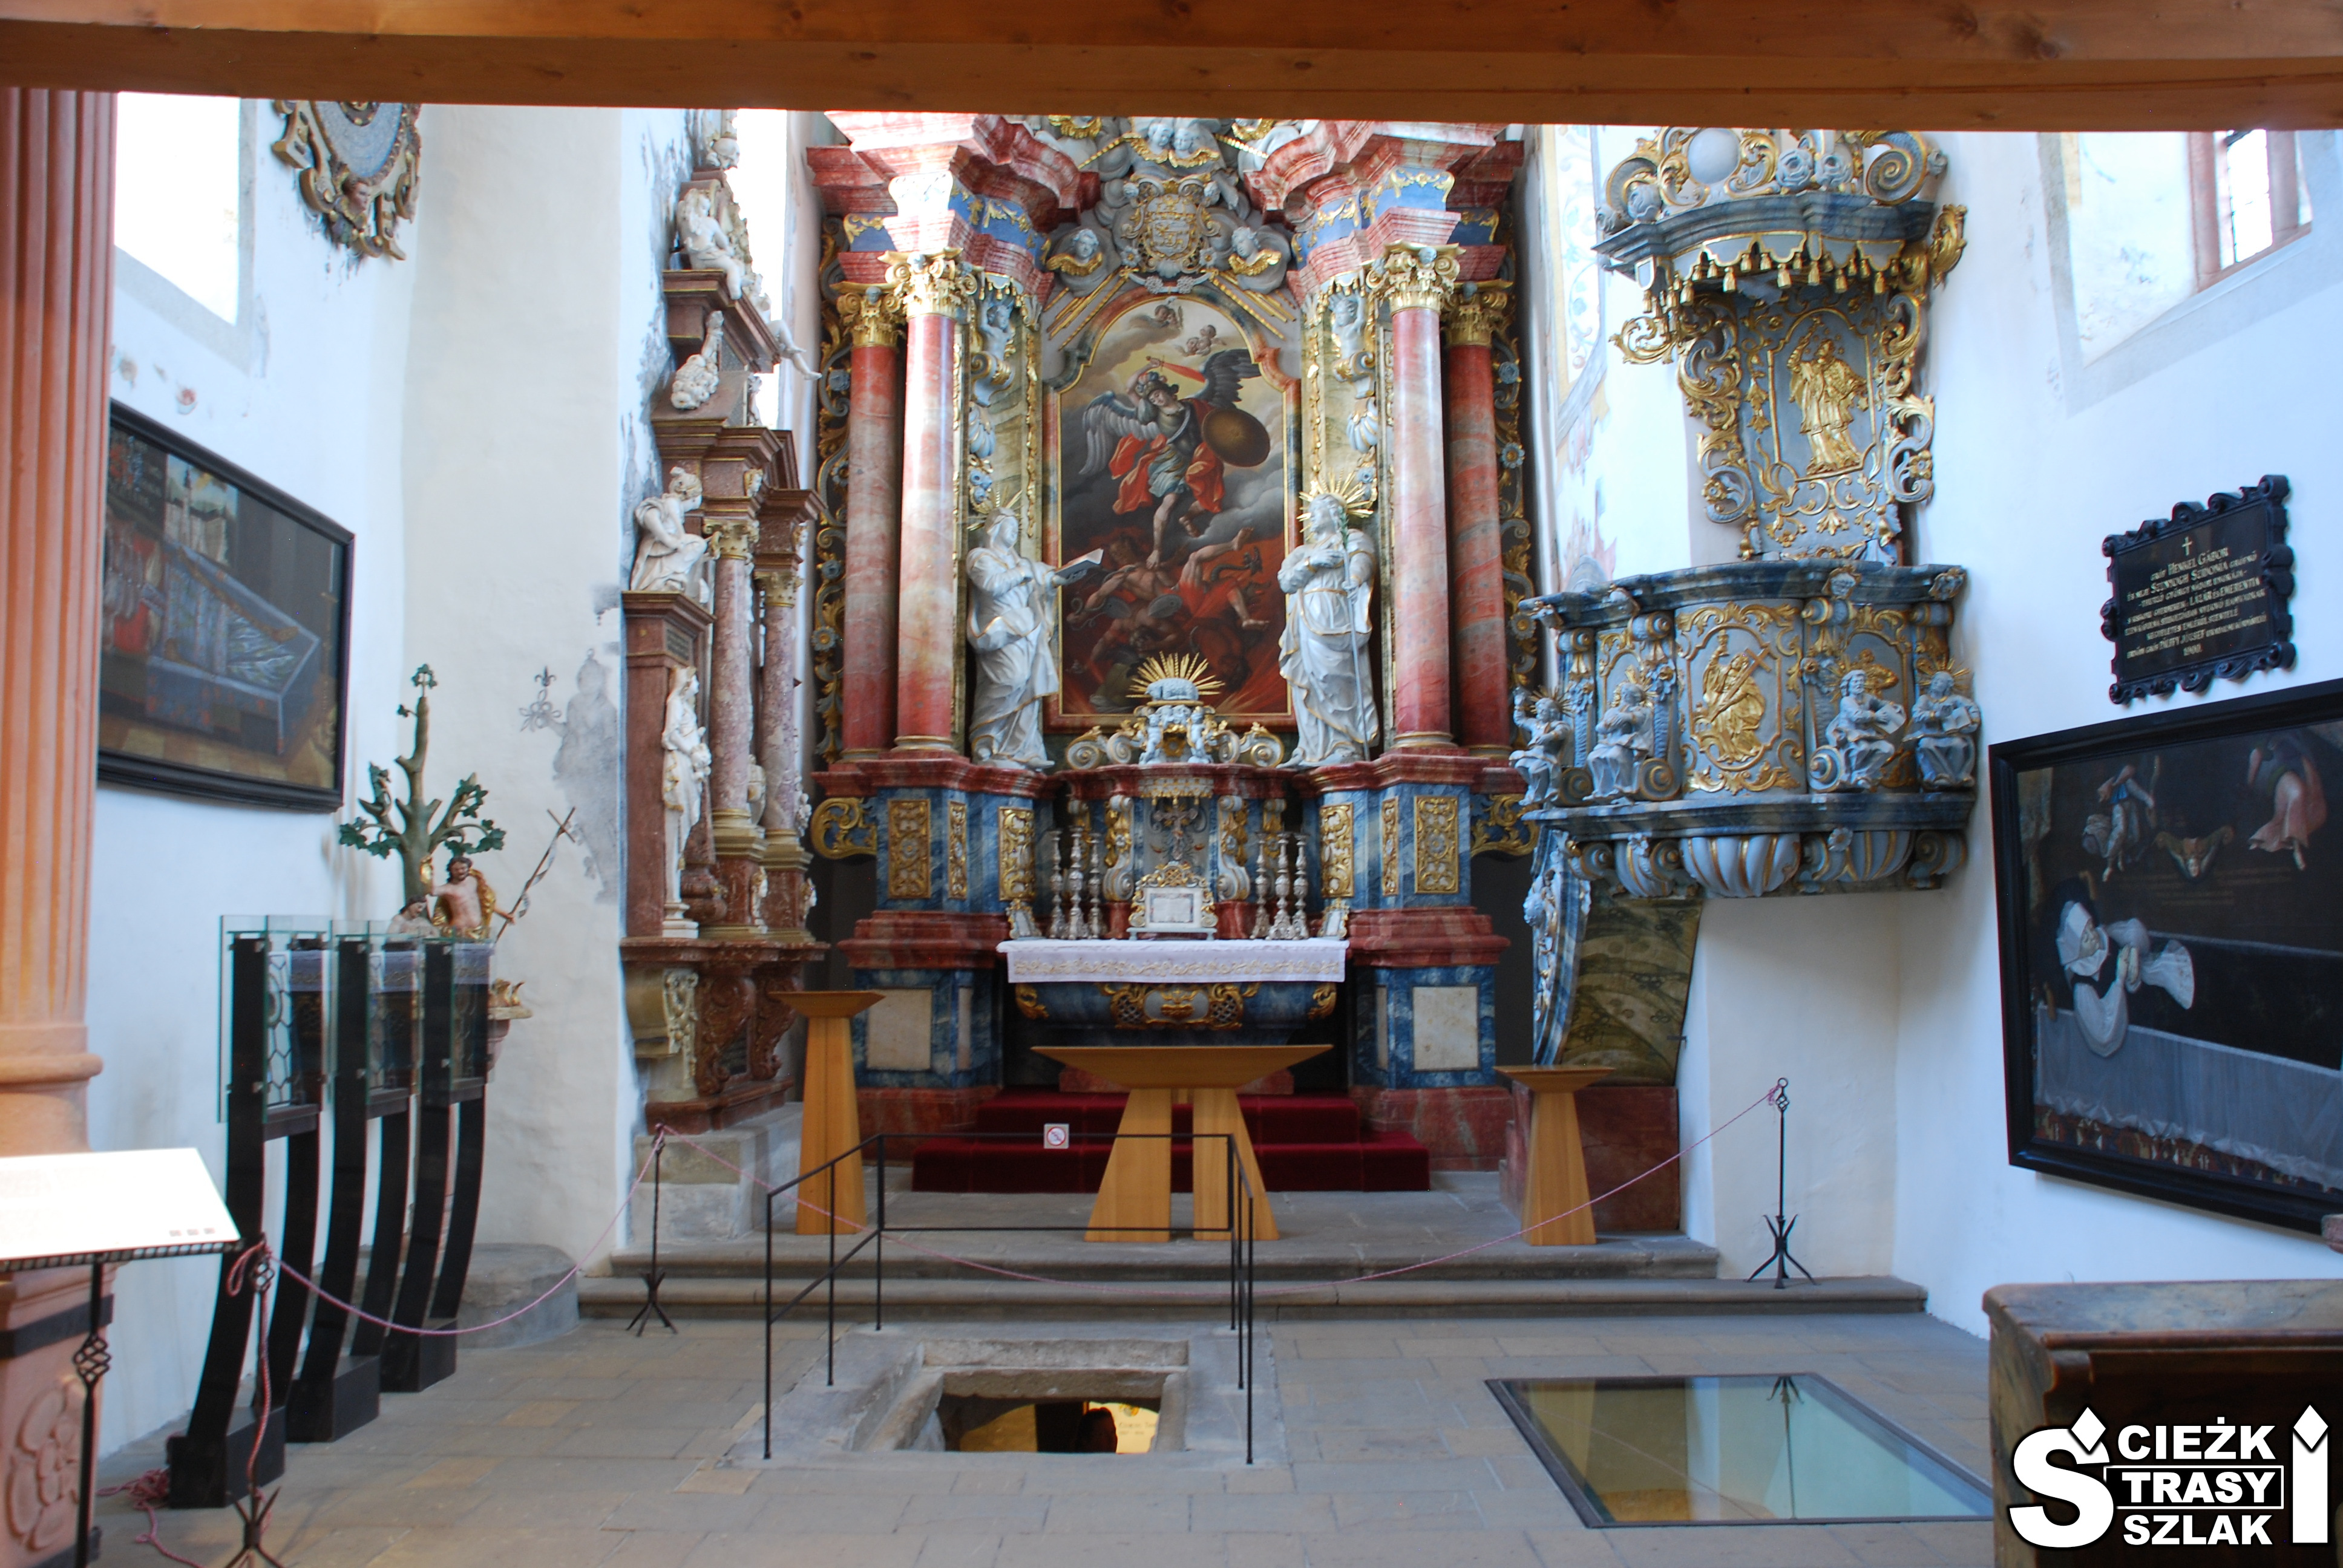 Ołtarz główny z kolumnami i ambona z rzeźbami we wnętrzu kaplicy Św. Michała przy Zamku Orawskim na Słowacji